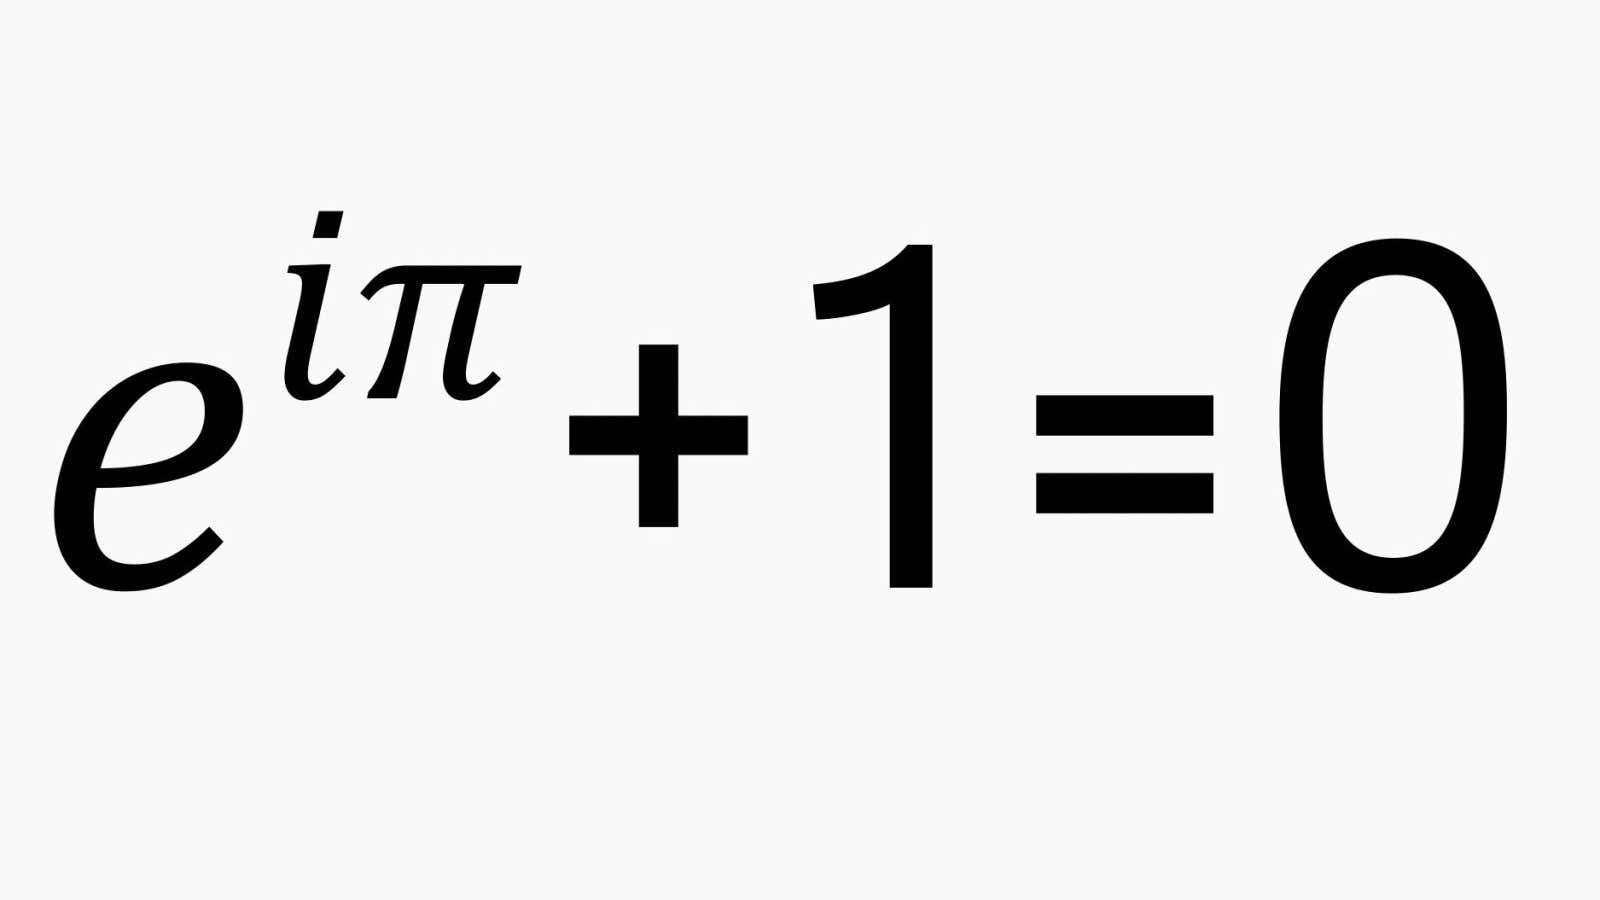 Mathematics is beautiful.